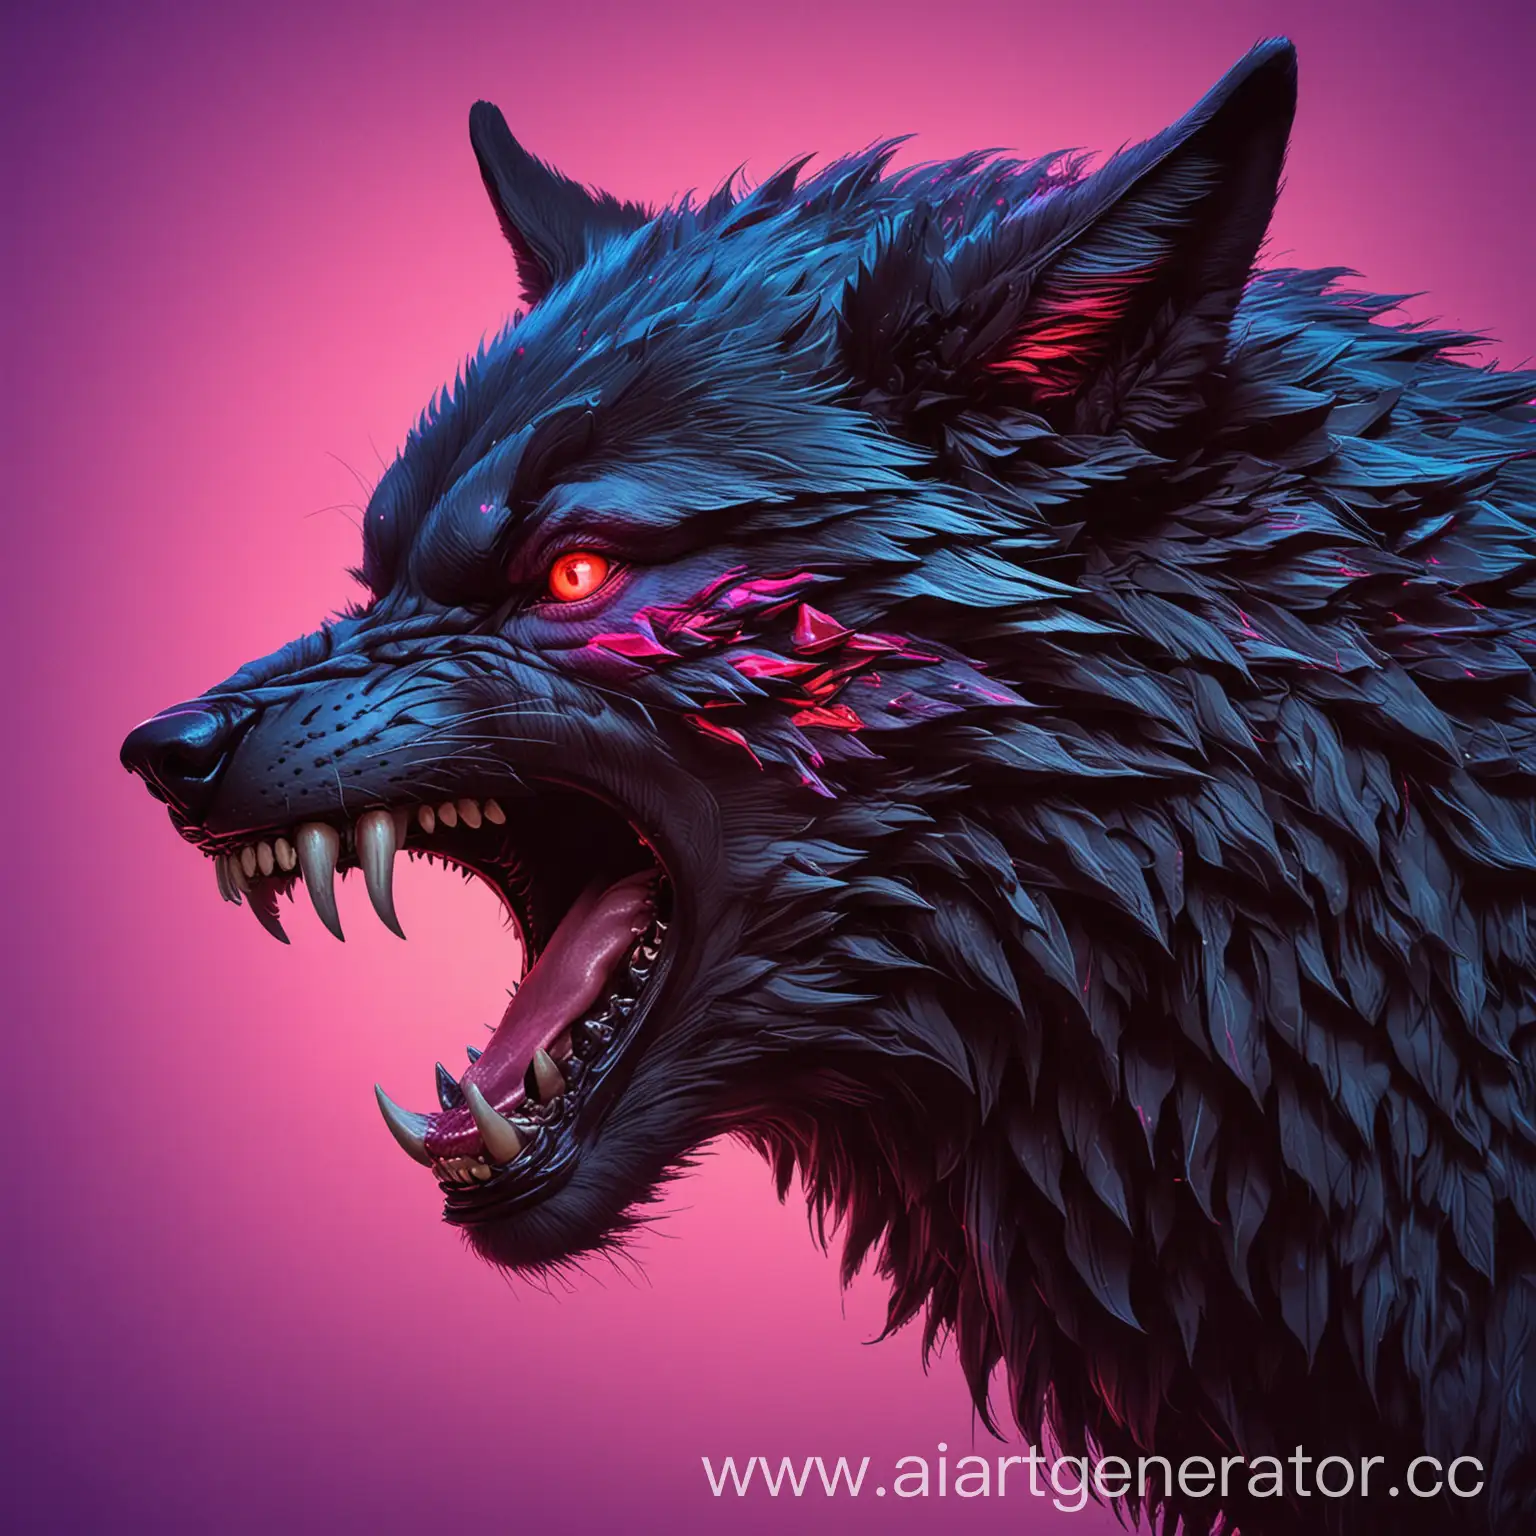 с видом сбоку графичный рисунок головы рычащего злого волка с черной шерстью красными глазами на неоновом розово-фиолетово-синем фоне детально ярко